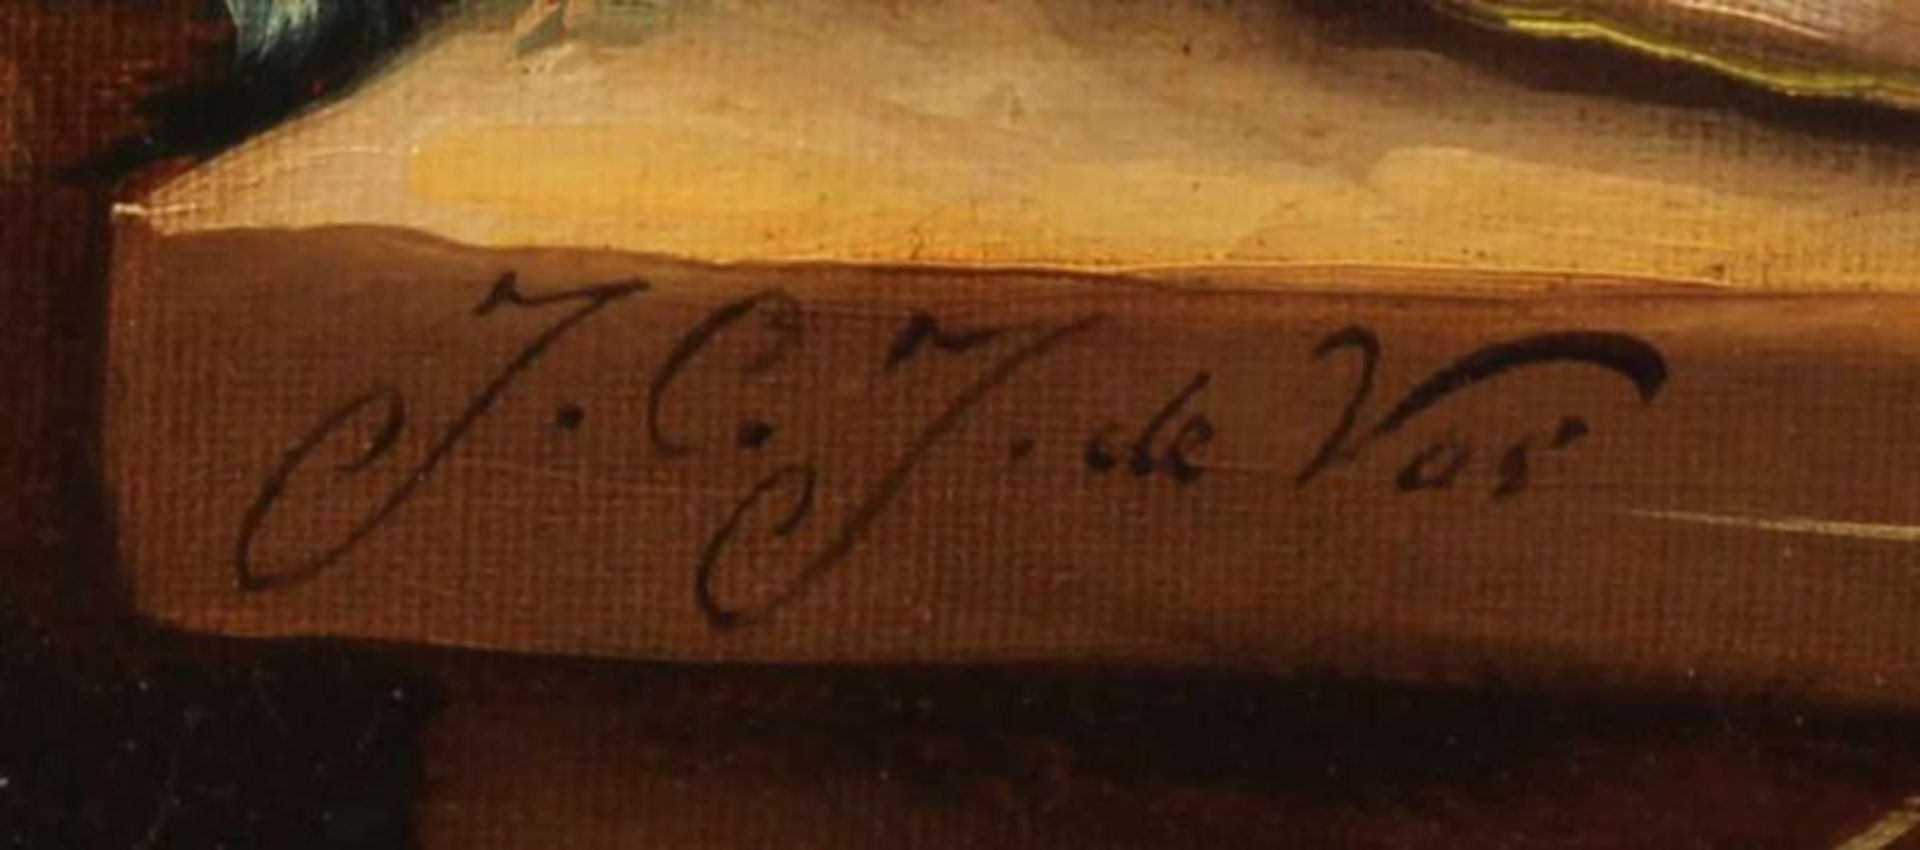 Vos, J.C. de (20. Jh.), "Blumenstillleben", Öl auf Leinwand, signiert unten links J.C.J. de Vos, - Image 3 of 4